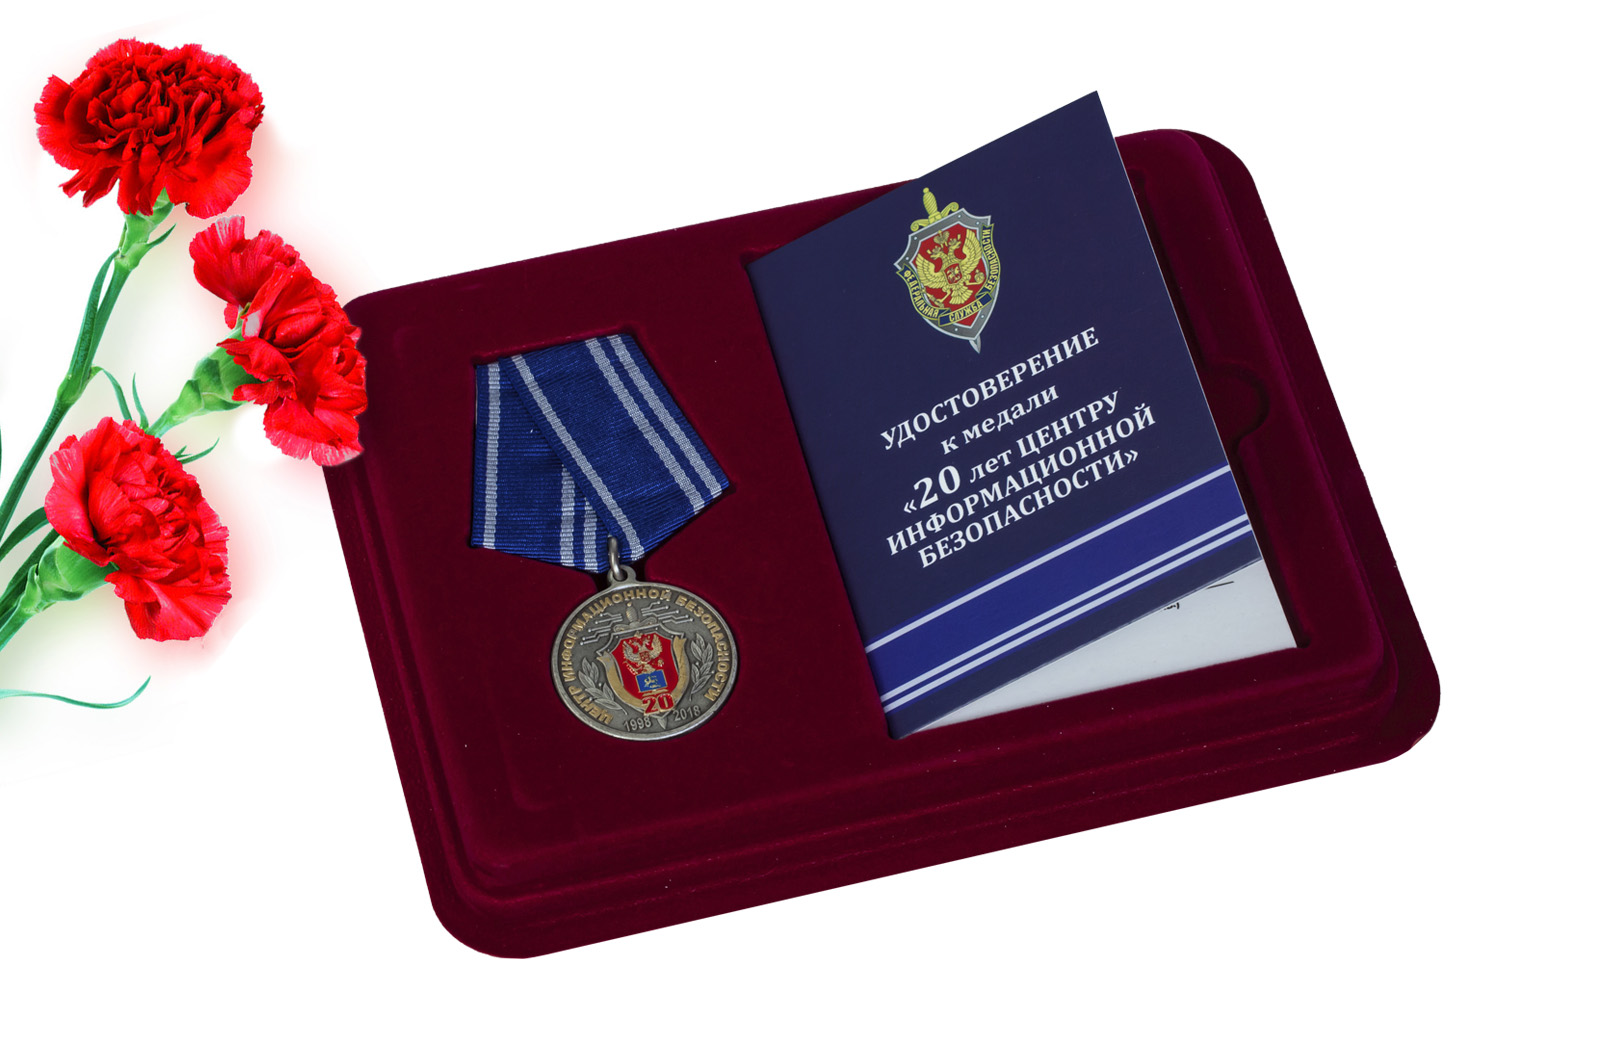 Купить медаль ФСБ России 20 лет Центру информационной безопасности онлайн выгодно